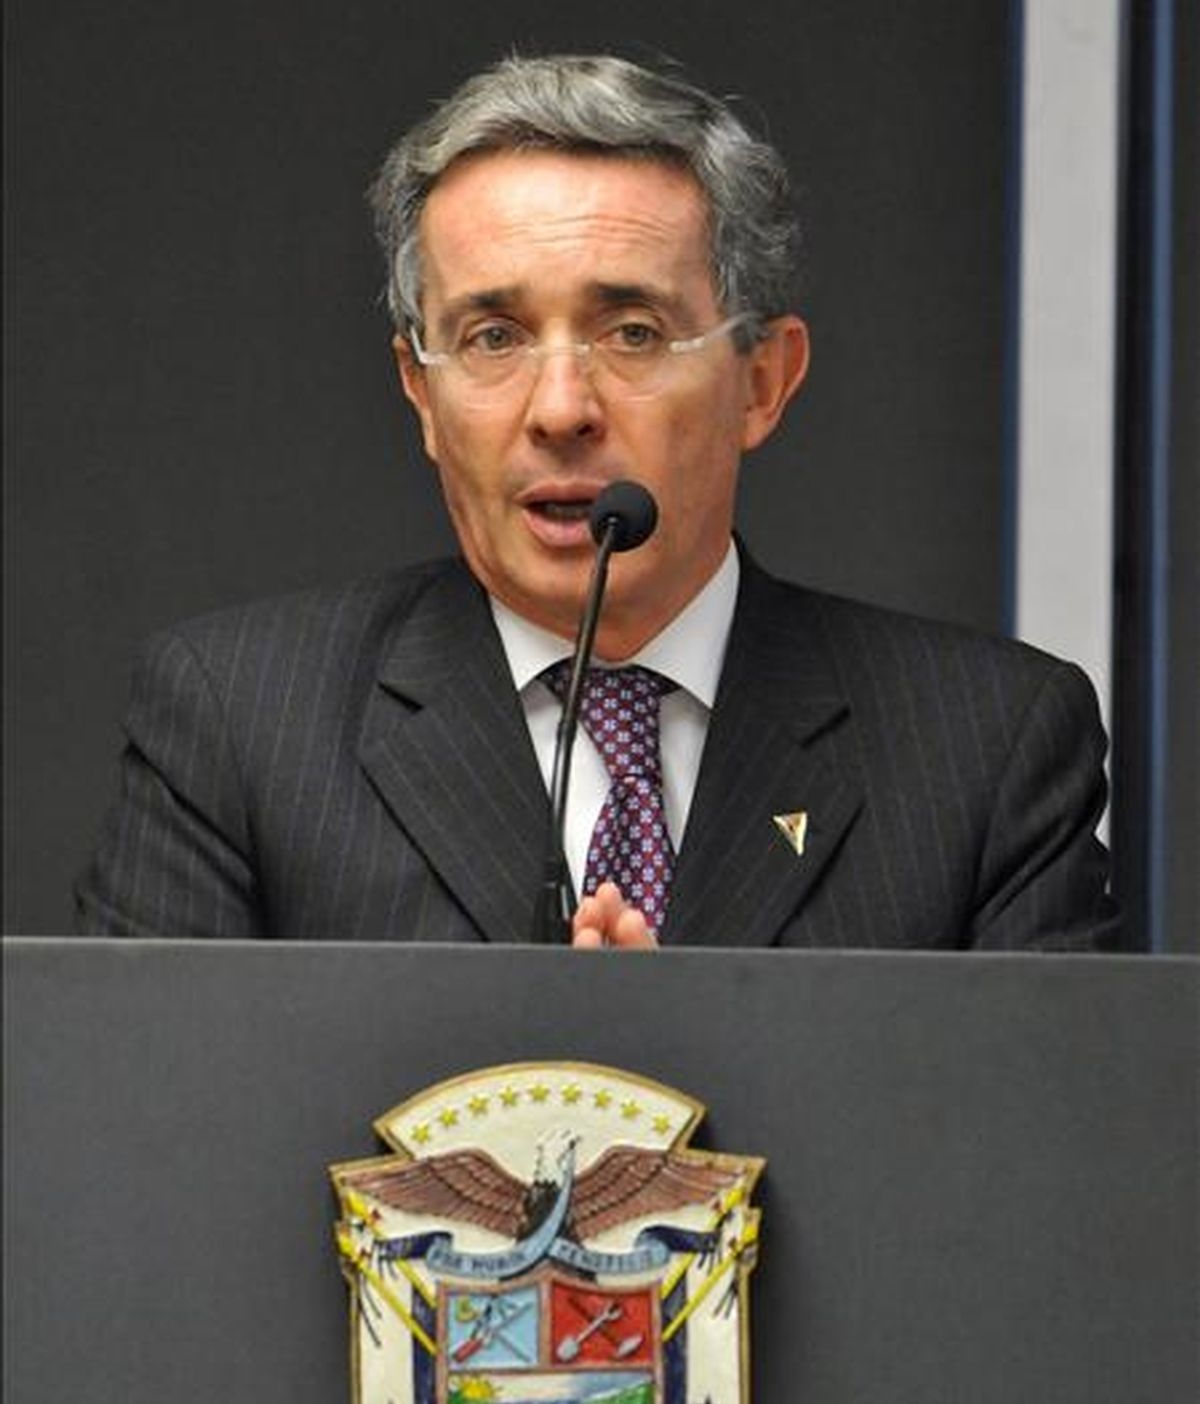 El proyecto de ley le le permite al presidente colombiano, Álvaro Uribe, presentarse como candidato a una segunda reelección en los comicios del 2010. EFE/Archivo